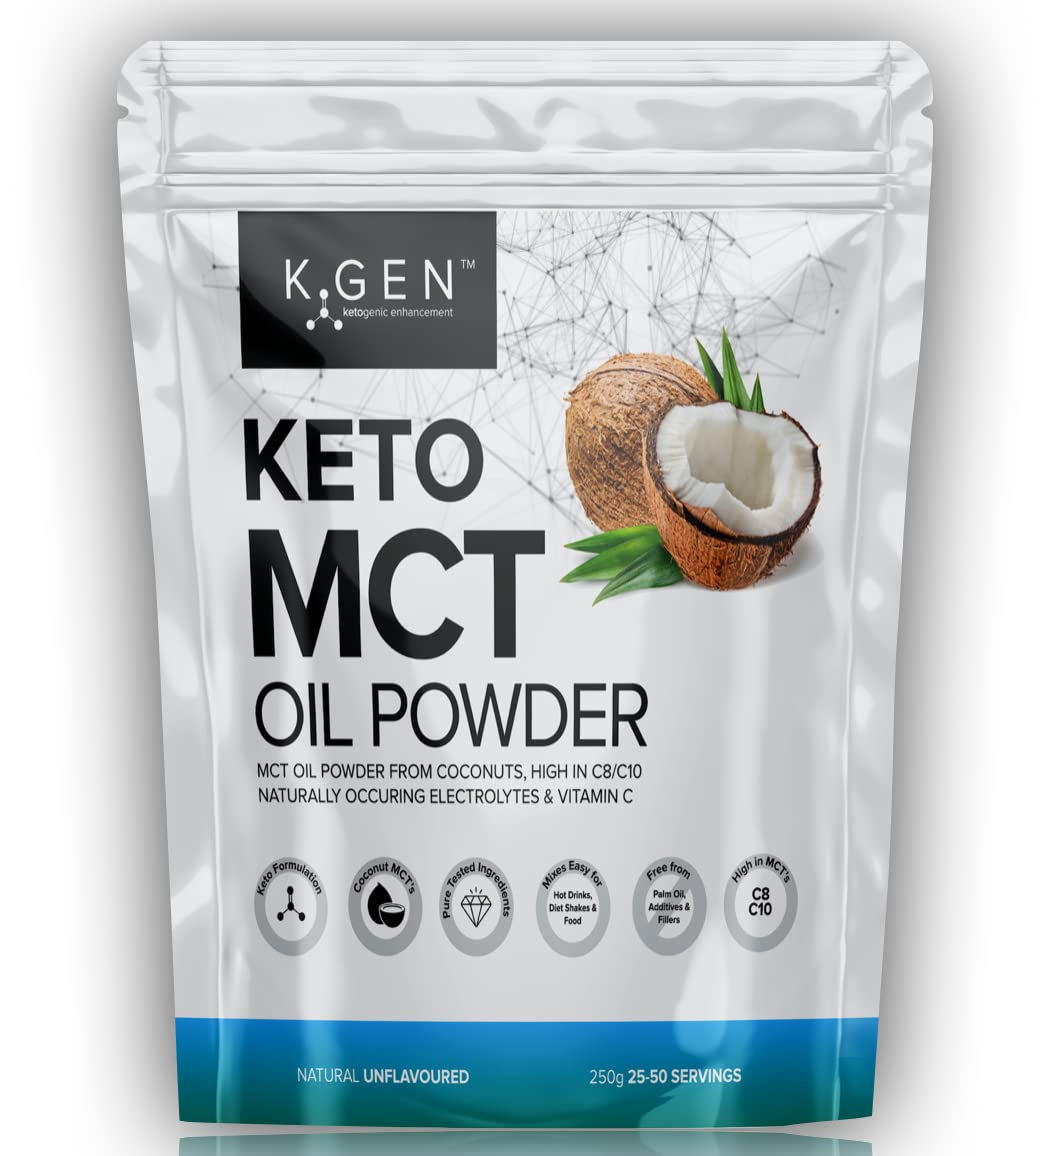 It's Just - MCT Oil Powder C8:C10 (60:40), 70% Fat, Non-Dairy, Keto Coffee